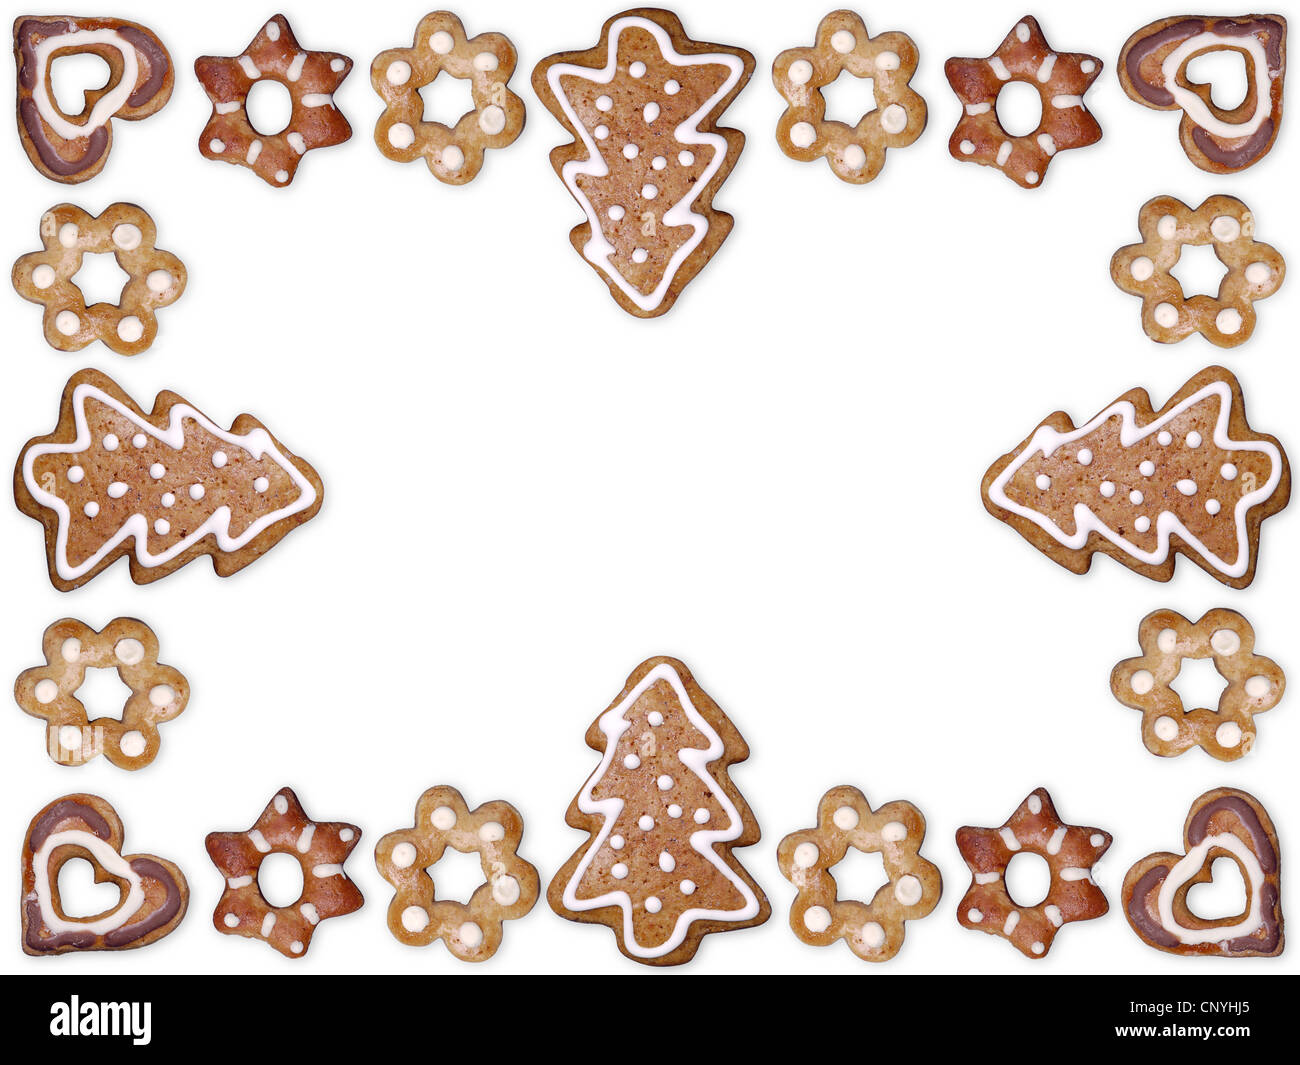 Decorativa forma estacional gingerbread cookies organizados en bastidor con fondo blanco. Foto de stock